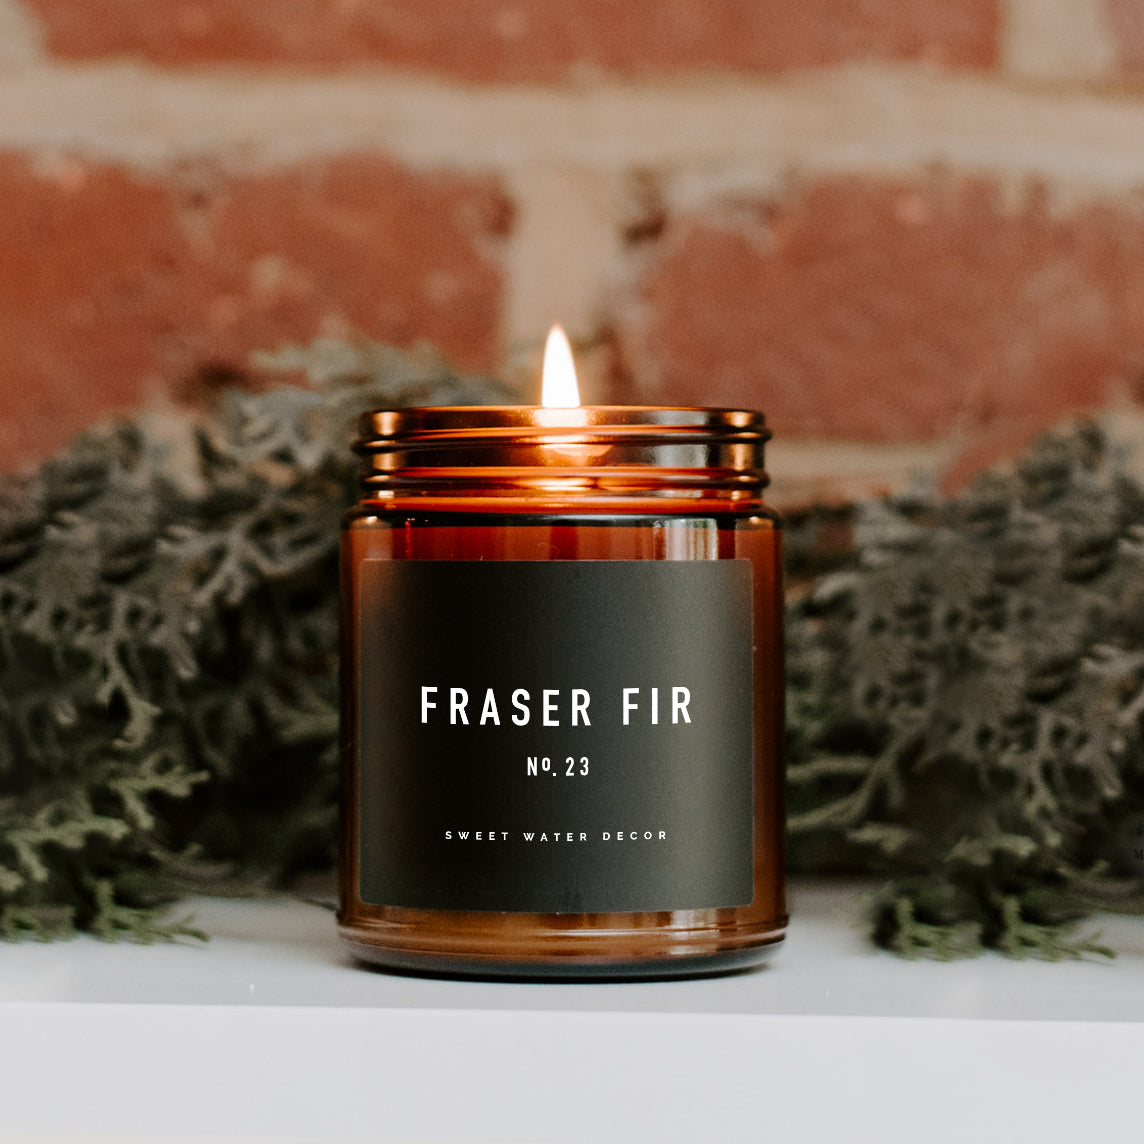 Fraser Fir Soy Candle - Amber Jar - 9 oz